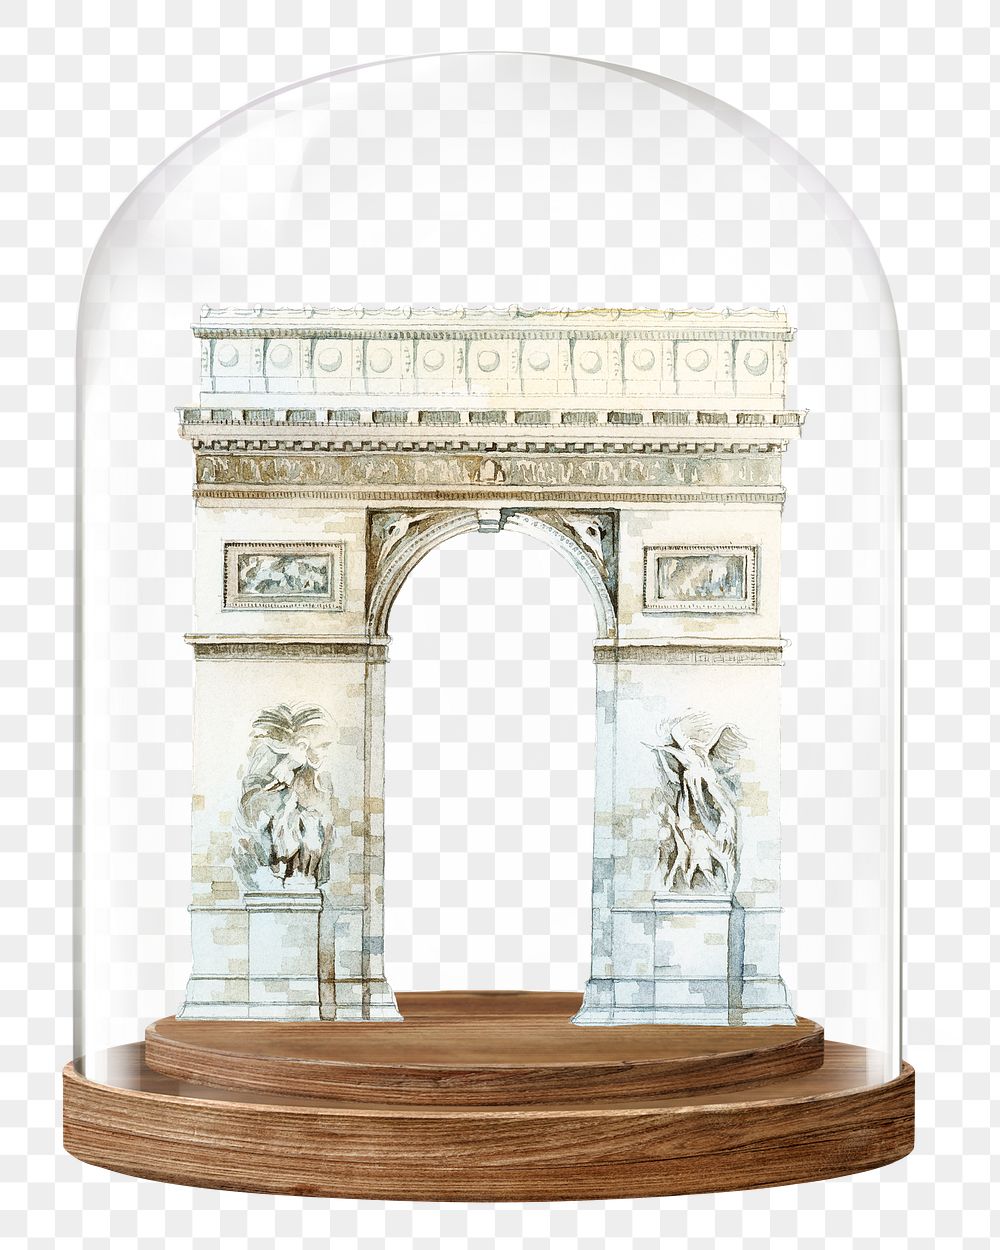 Arc de Triomphe png glass dome sticker, Paris travel landmark concept art, transparent background